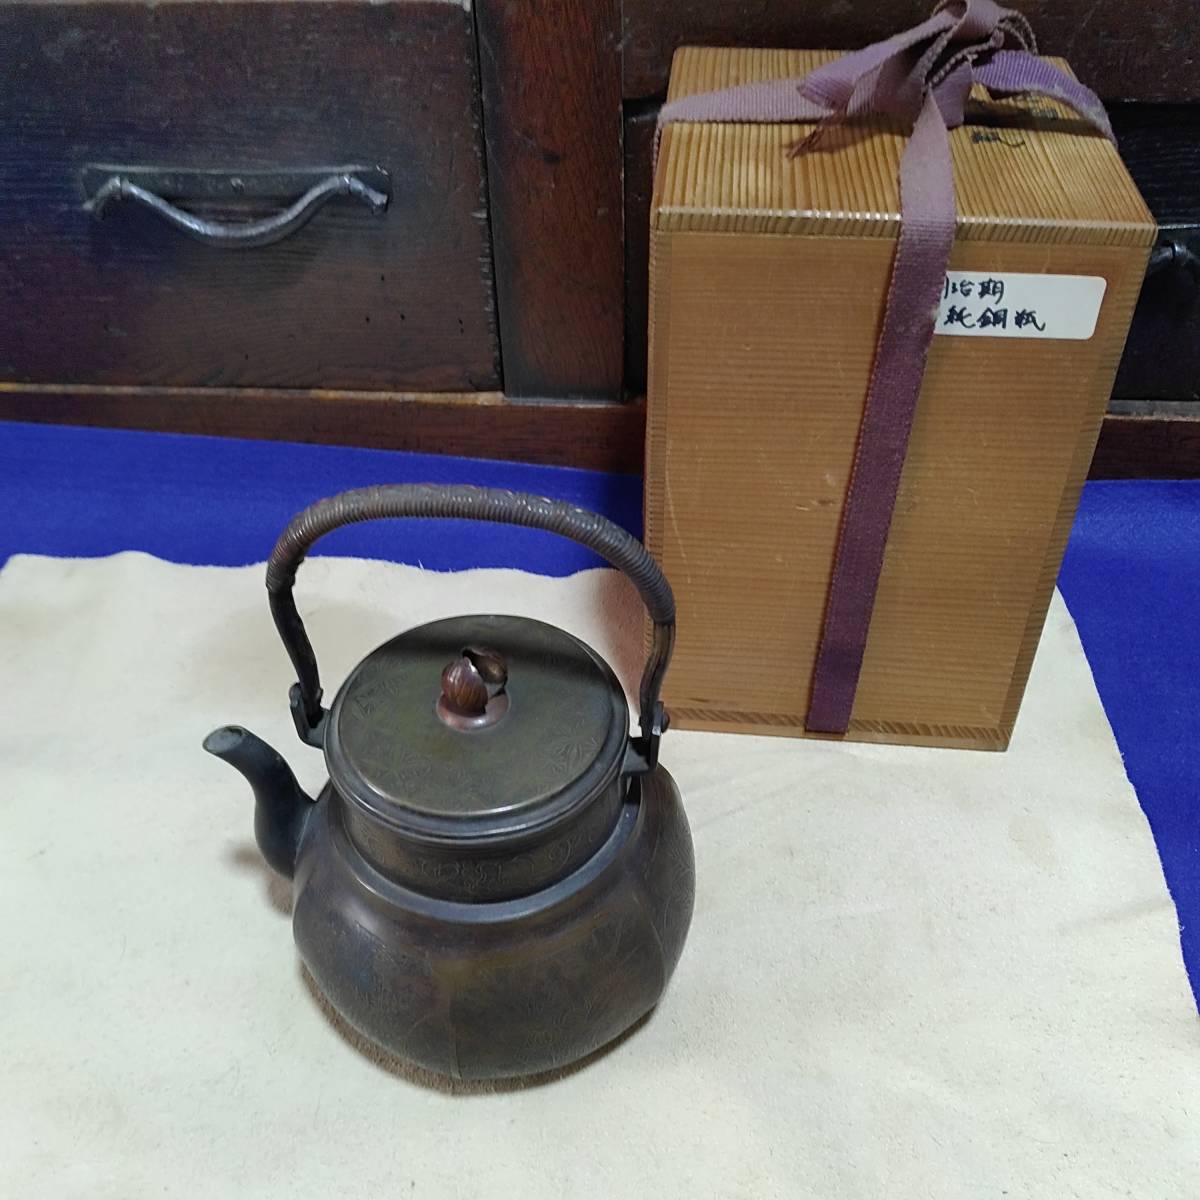 うぶだし煎茶道具骨董毛彫り象嵌銅製水指銅瓶 明治期